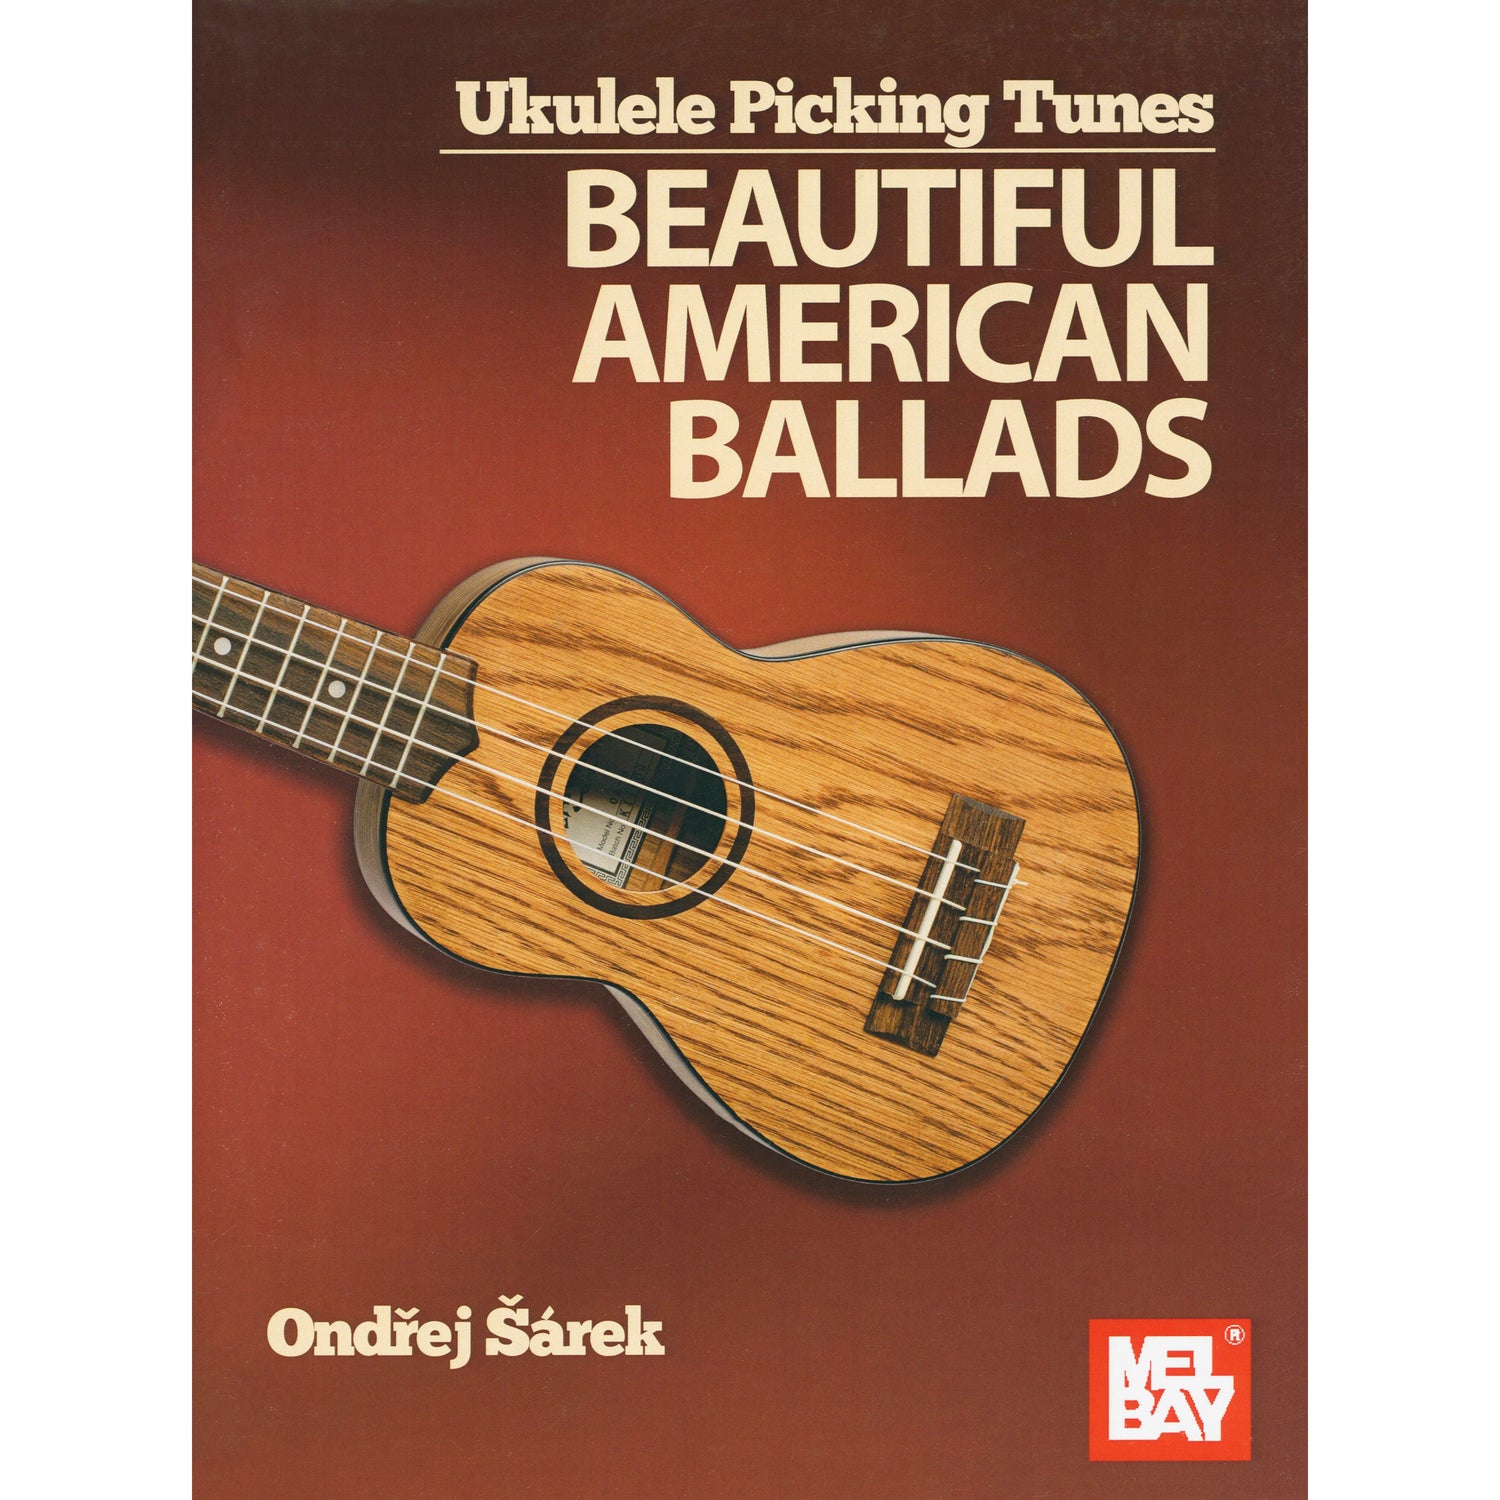 Image 1 of Ukulele Picking Tunes : Beautiful American Ballads - SKU# 02-30928 : Product Type Media : Elderly Instruments